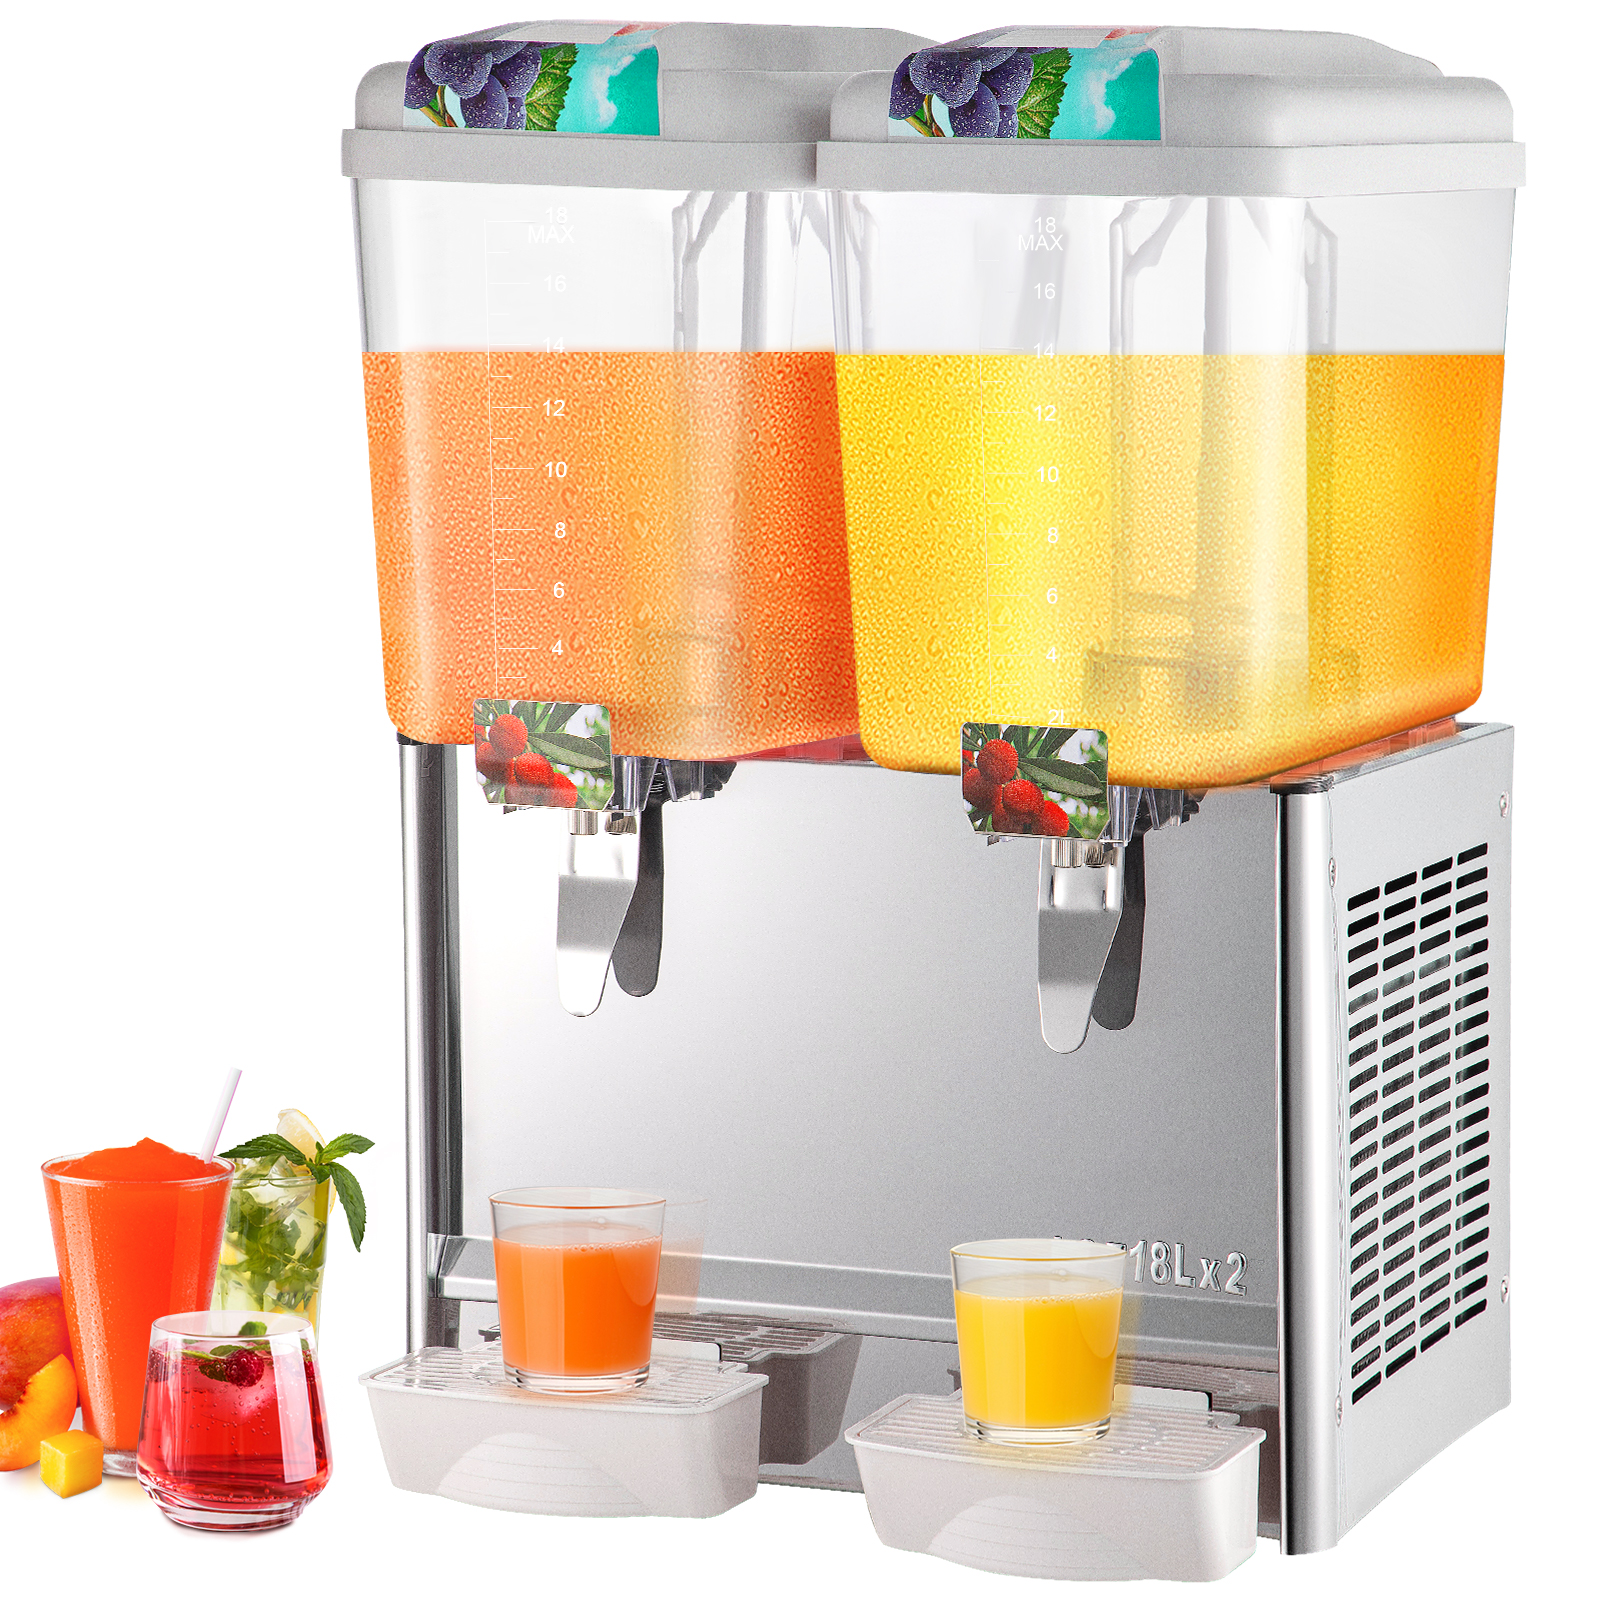 VEVOR Commercial Juice Dispenser 14.25 Gallon 3 Tanks Cold Beverage Ice  Drink